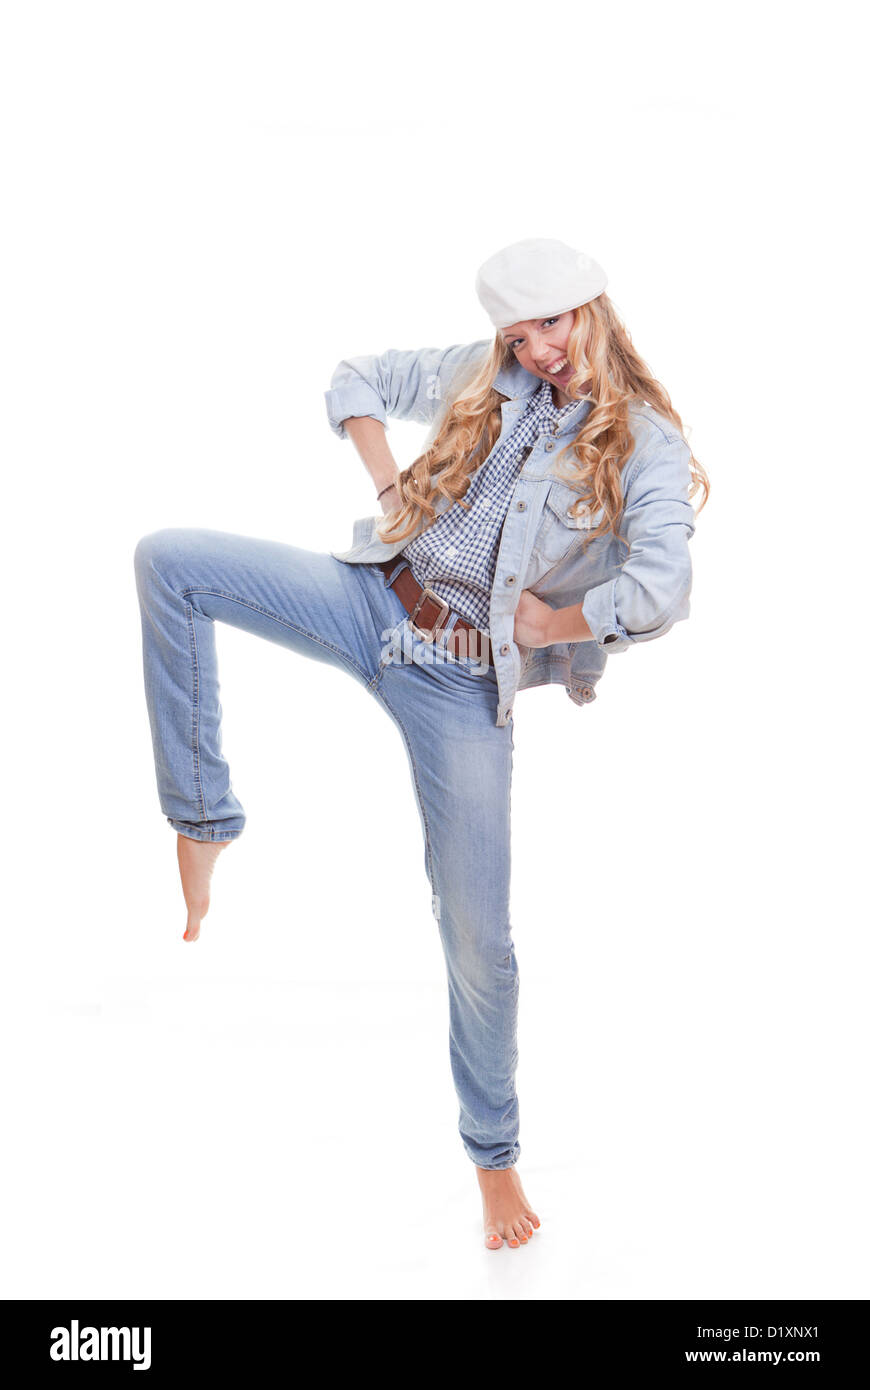 fashion woman dancing Stock Photo